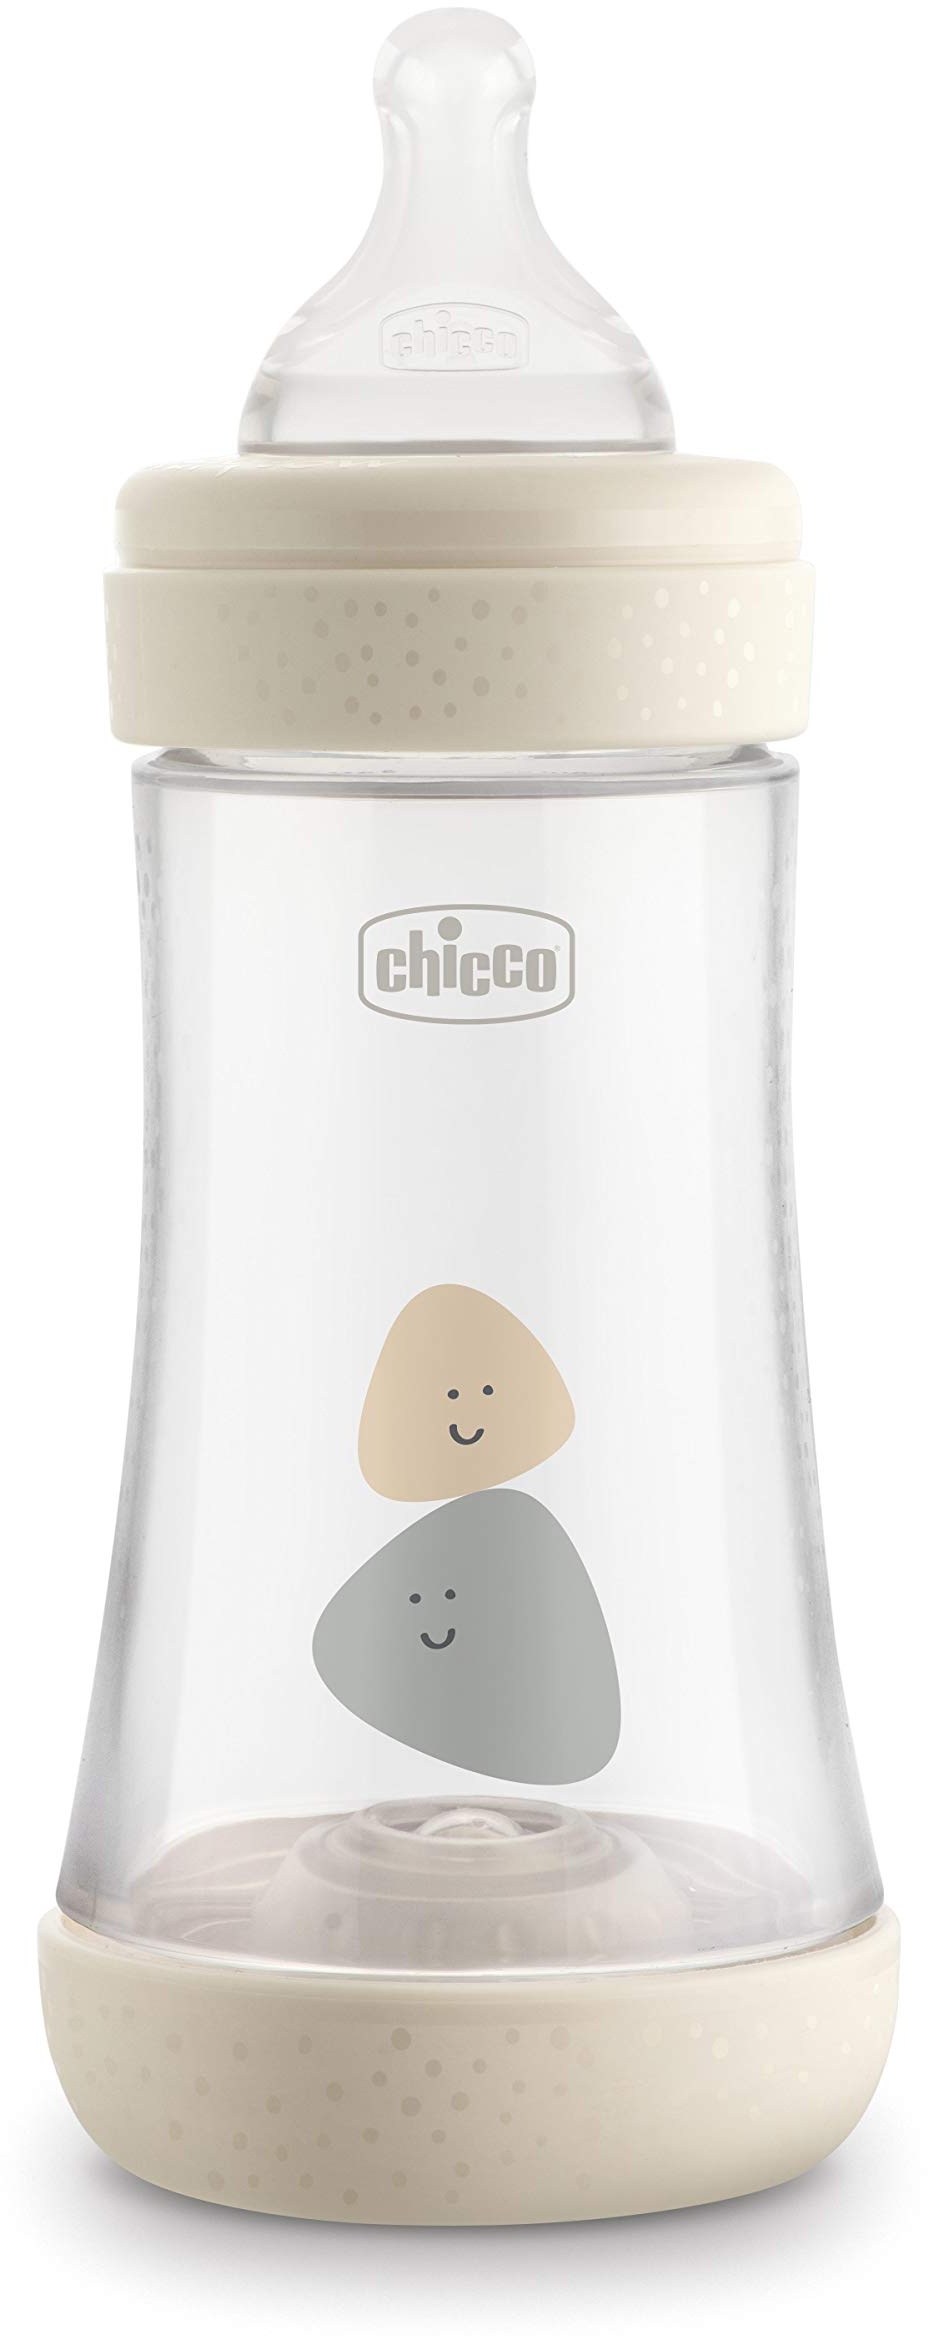 Chicco PERFECT 5 Anti-Kolik 300 ml Babyfläschchen, Baby Flasche für Neugeborene mit Schnellem Fluss 4+ Monate mit Weichem Silikon-Sauger, 300 ml Biofunktionale Babyflasche mit Intui-Flow System, Beige